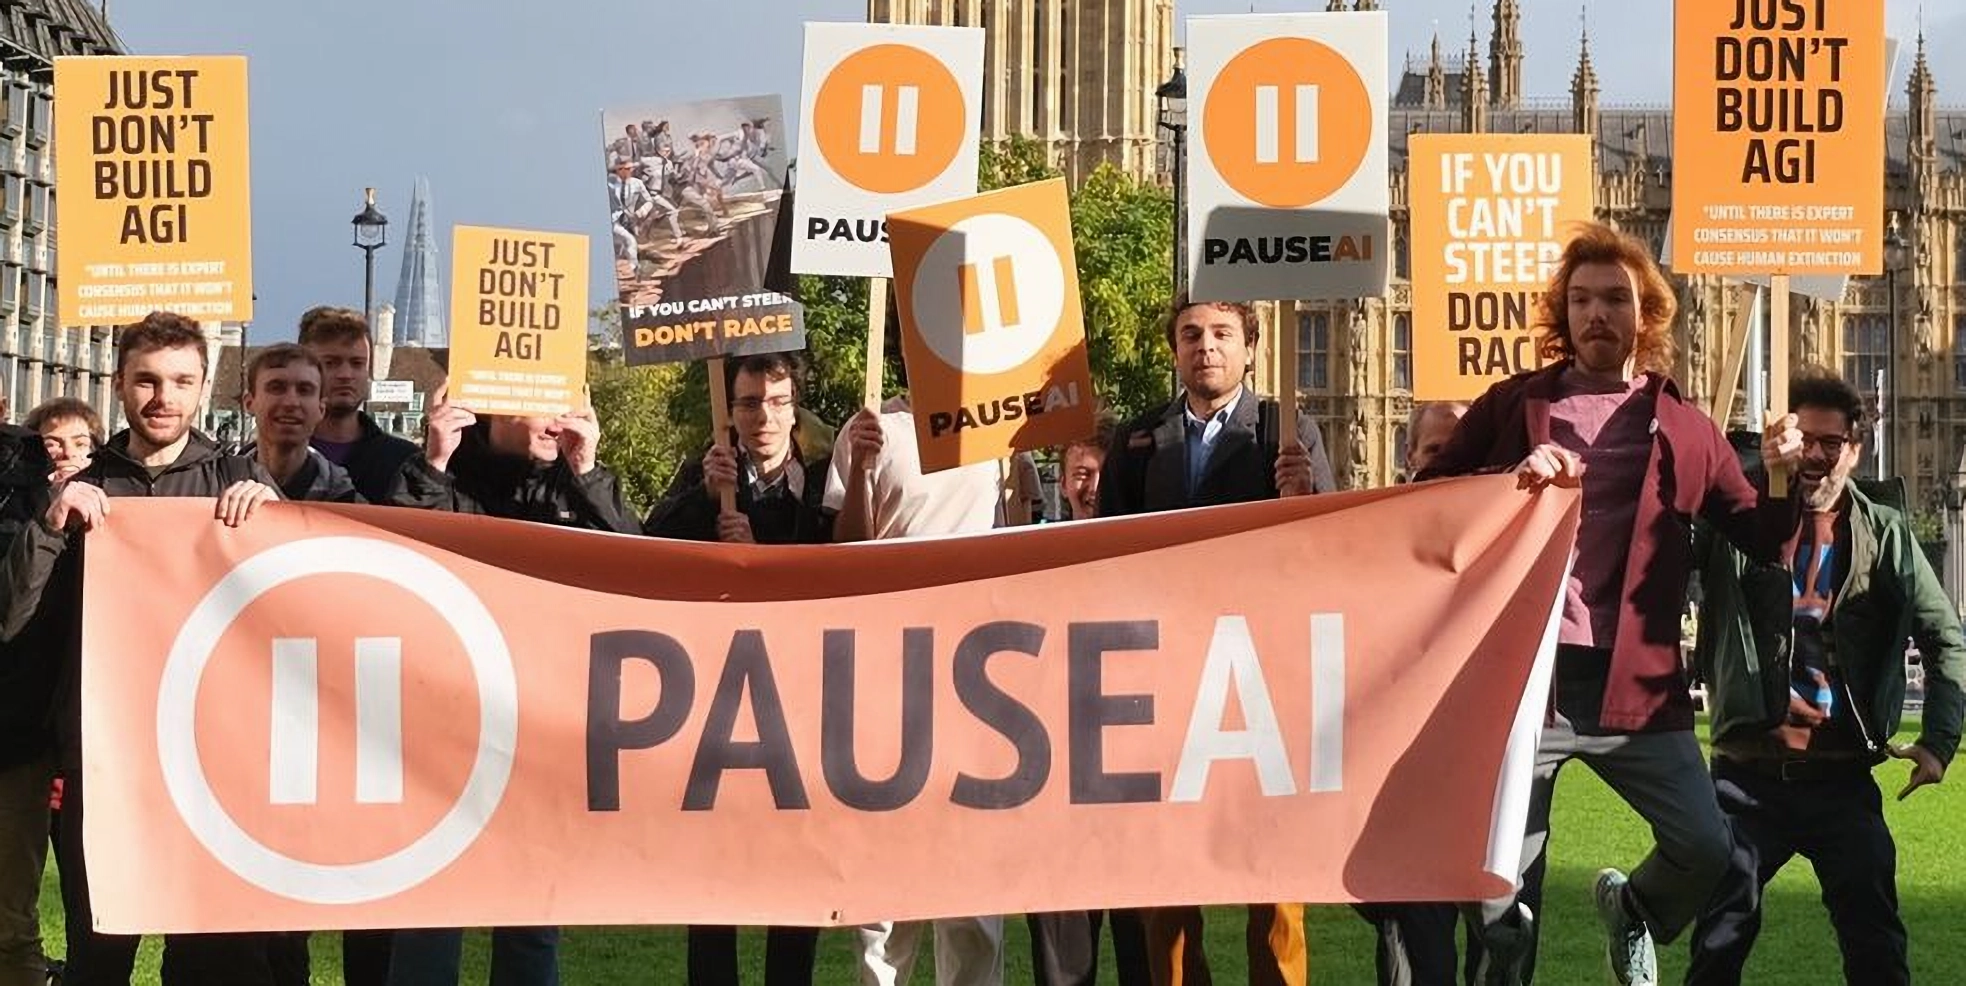 Pause AI and No AGI activists protest against AGI outside OpenAI office